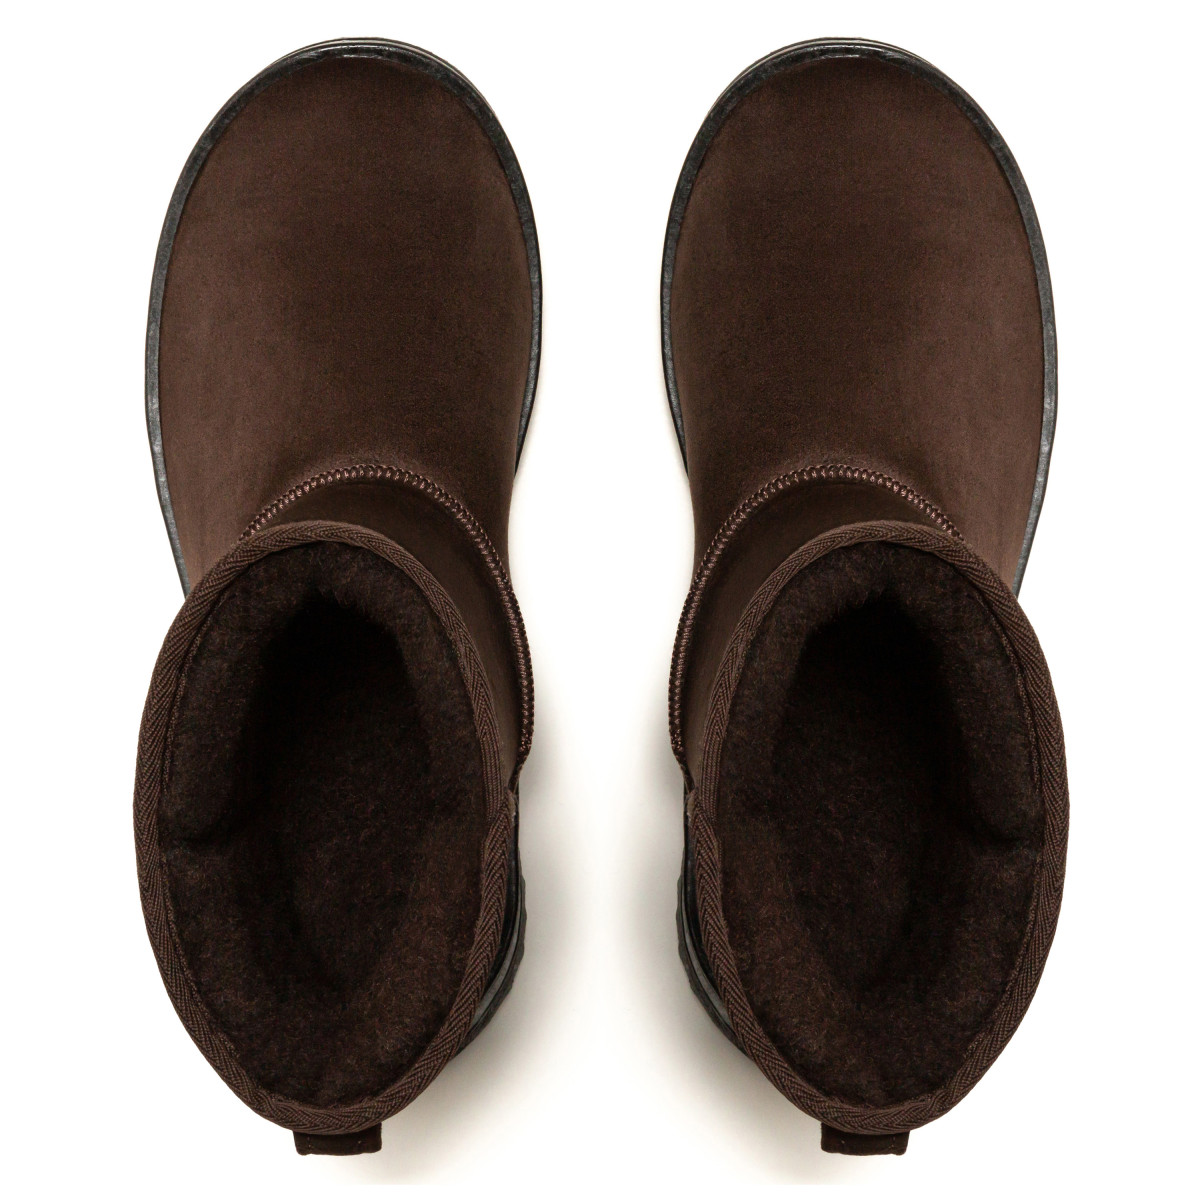 Cumpara online cizme de iarnă bărbați Maro -